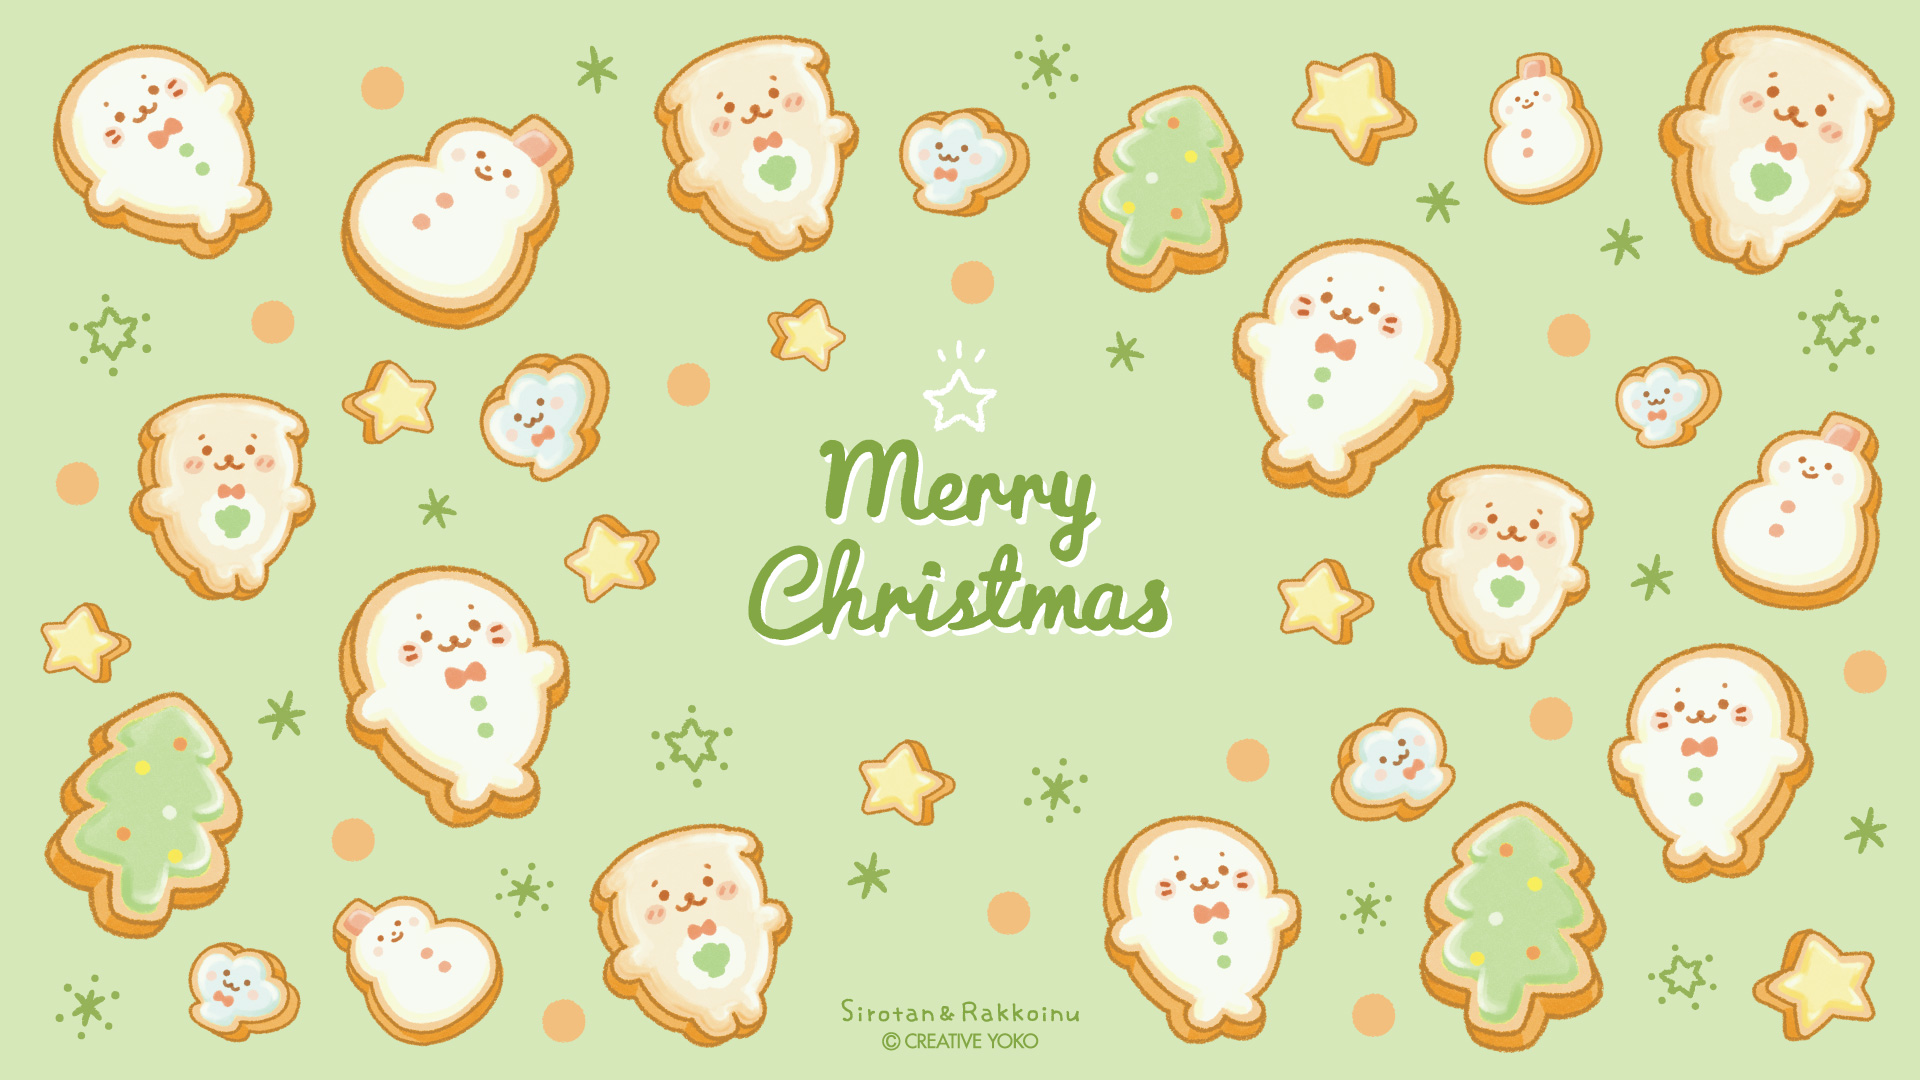 しろたん らっこいぬ クリスマスクッキーシリーズ 10 29 金 より販売開始 ネットショップは10 27 水 しろたん 公式サイト Sirotan Official Site クリエイティブヨーコ